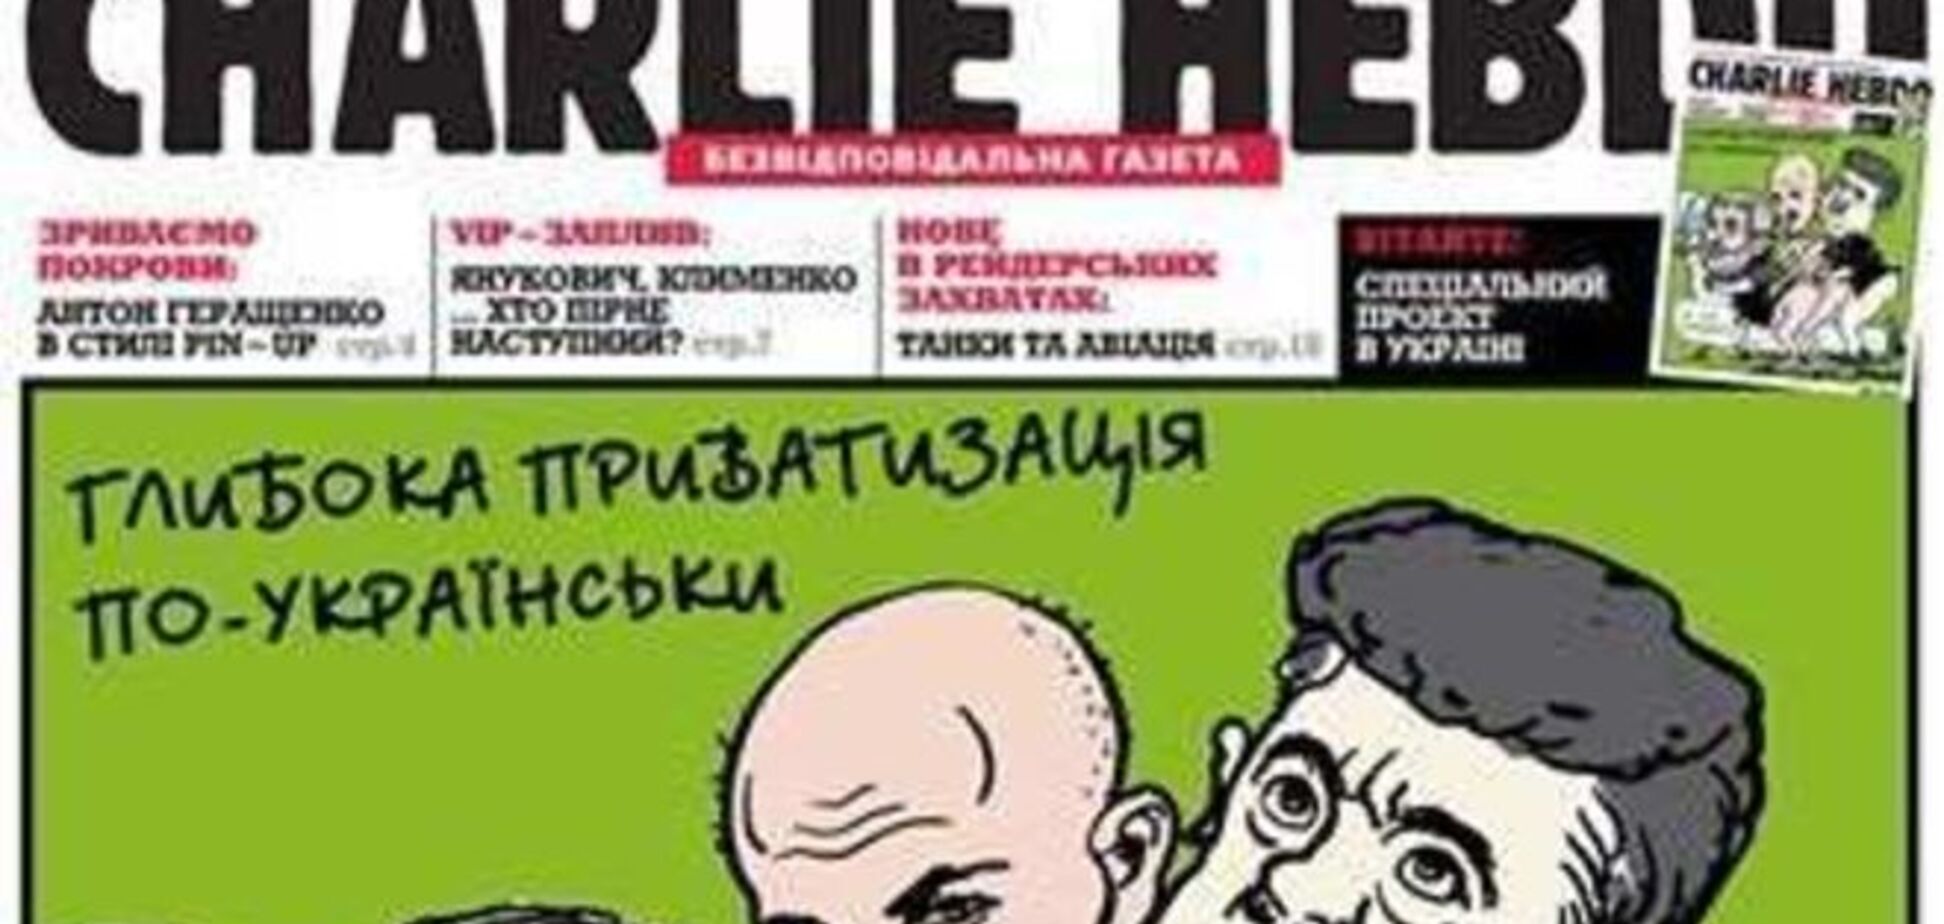 Украинская версия Charlie Hebdo: история одного киселевского фейка